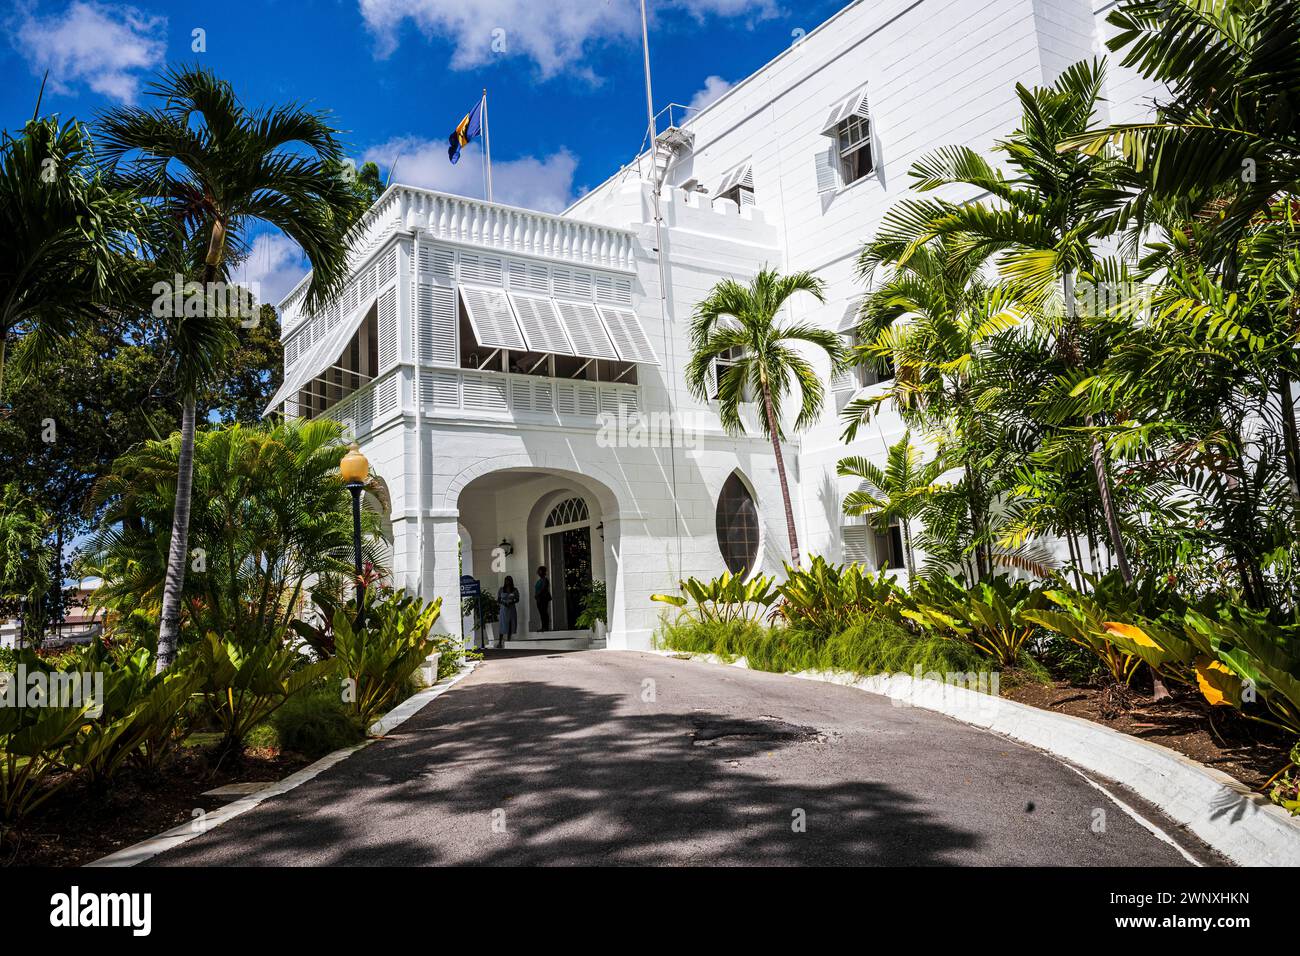 Das Barbadian State House, auch bekannt als Government House. Das 1755 erbaute Herrenhaus aus dem 18. Jahrhundert ist die offizielle Residenz des Präsidenten von Barbados. Stockfoto